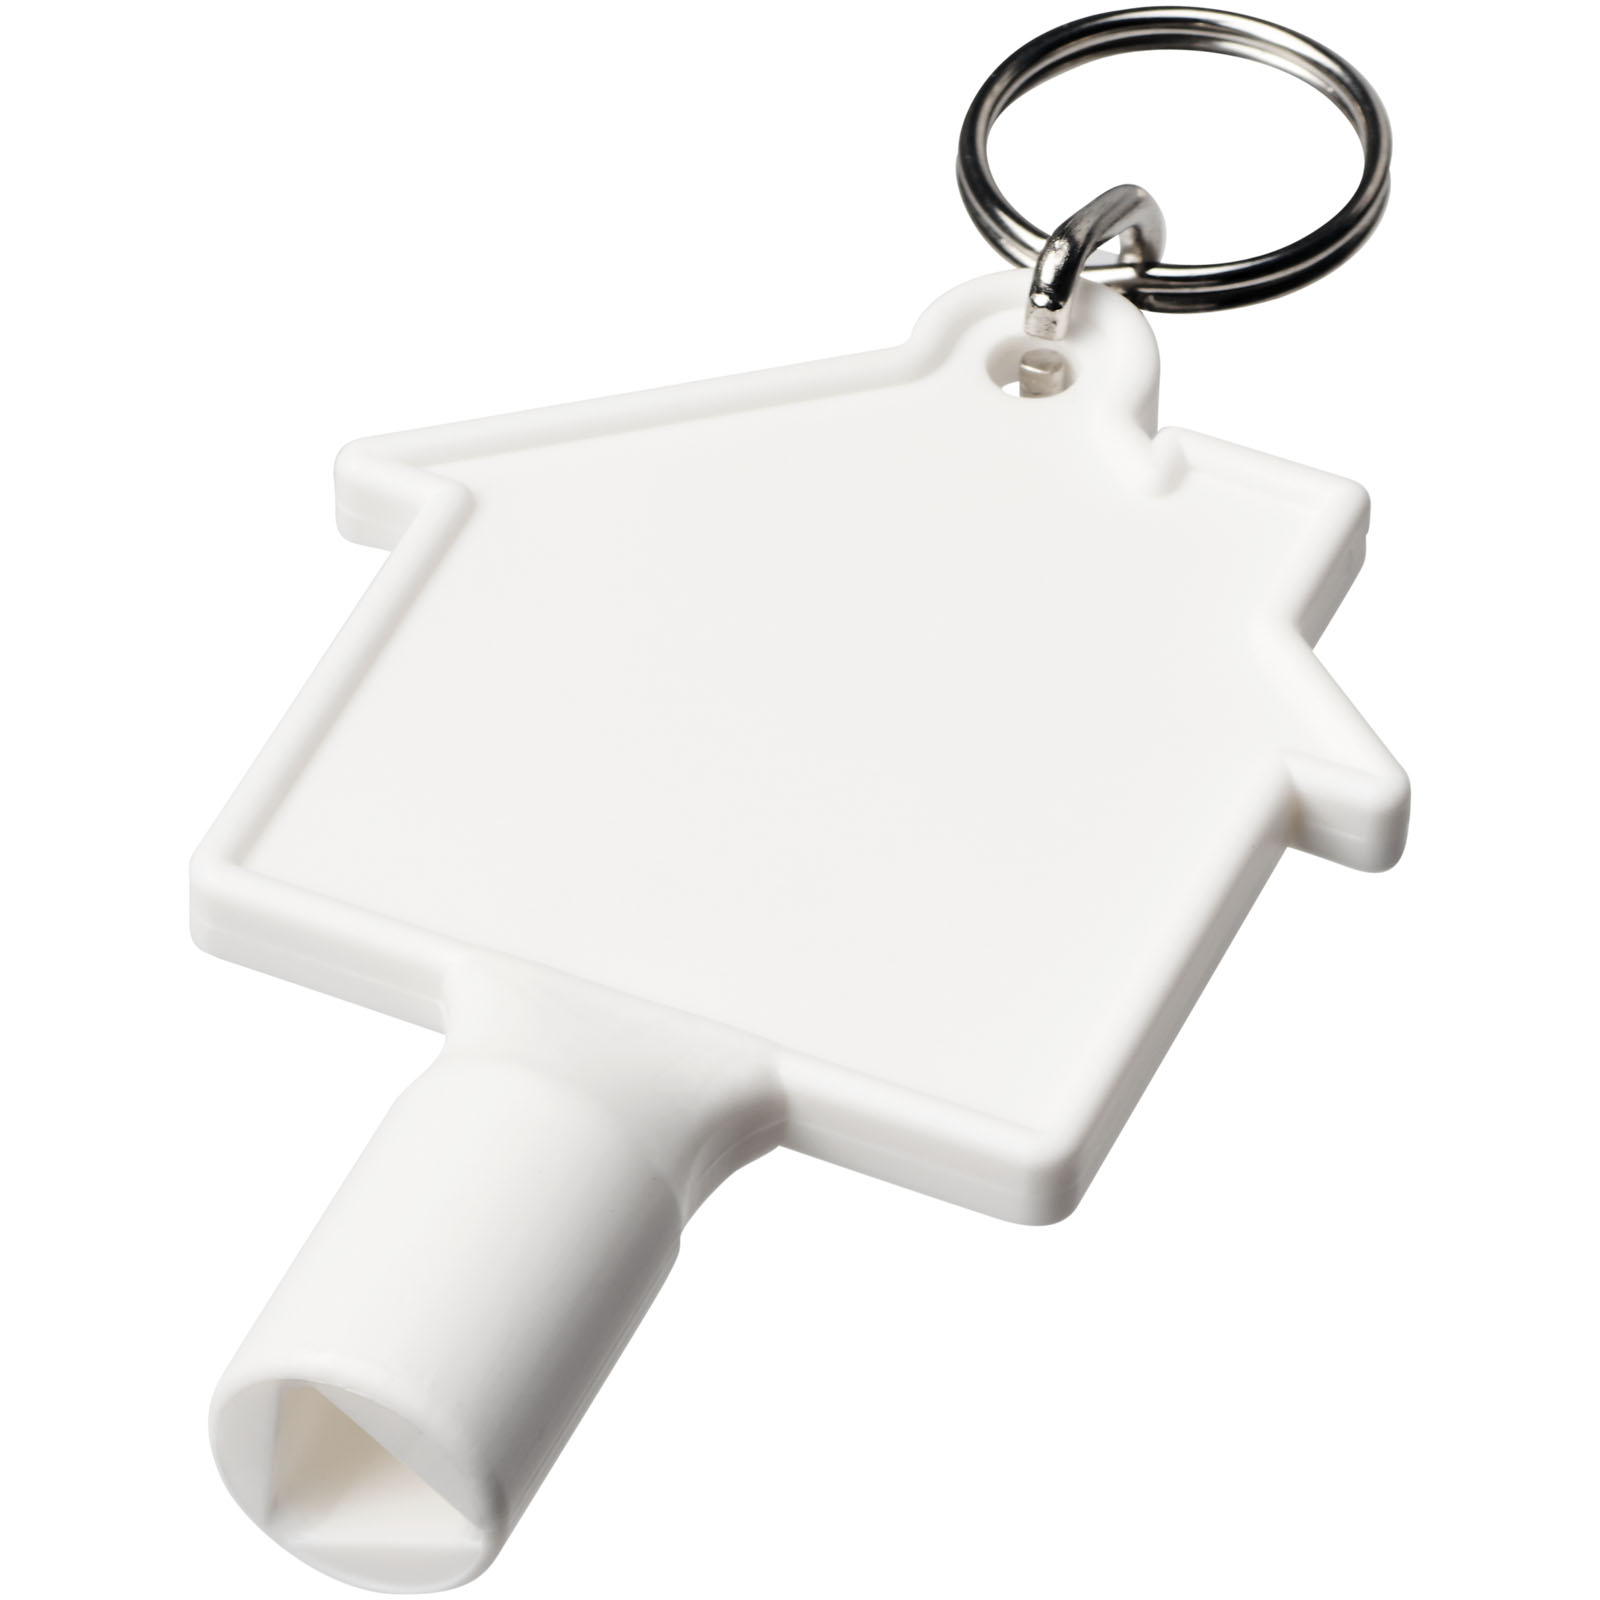 Advertising Keychains & Keyrings - Maximilian house-shaped recycled utility key keychain